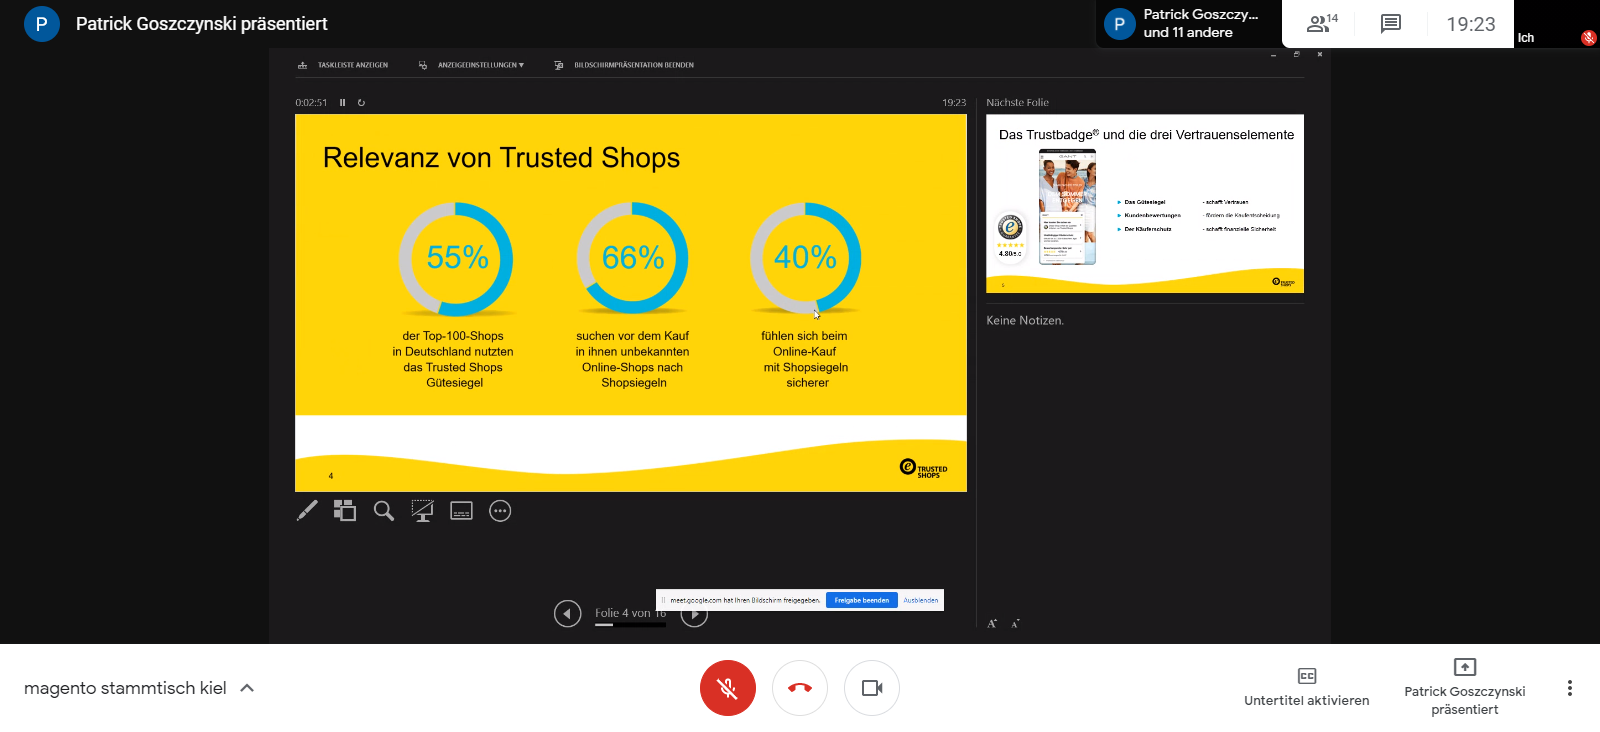 Vortrag „Trusted Shops – Die Vertrauensmarke im E‑Commerce“ von Patrick Goszczynski beim 35. Magento Stammtisch Kiel